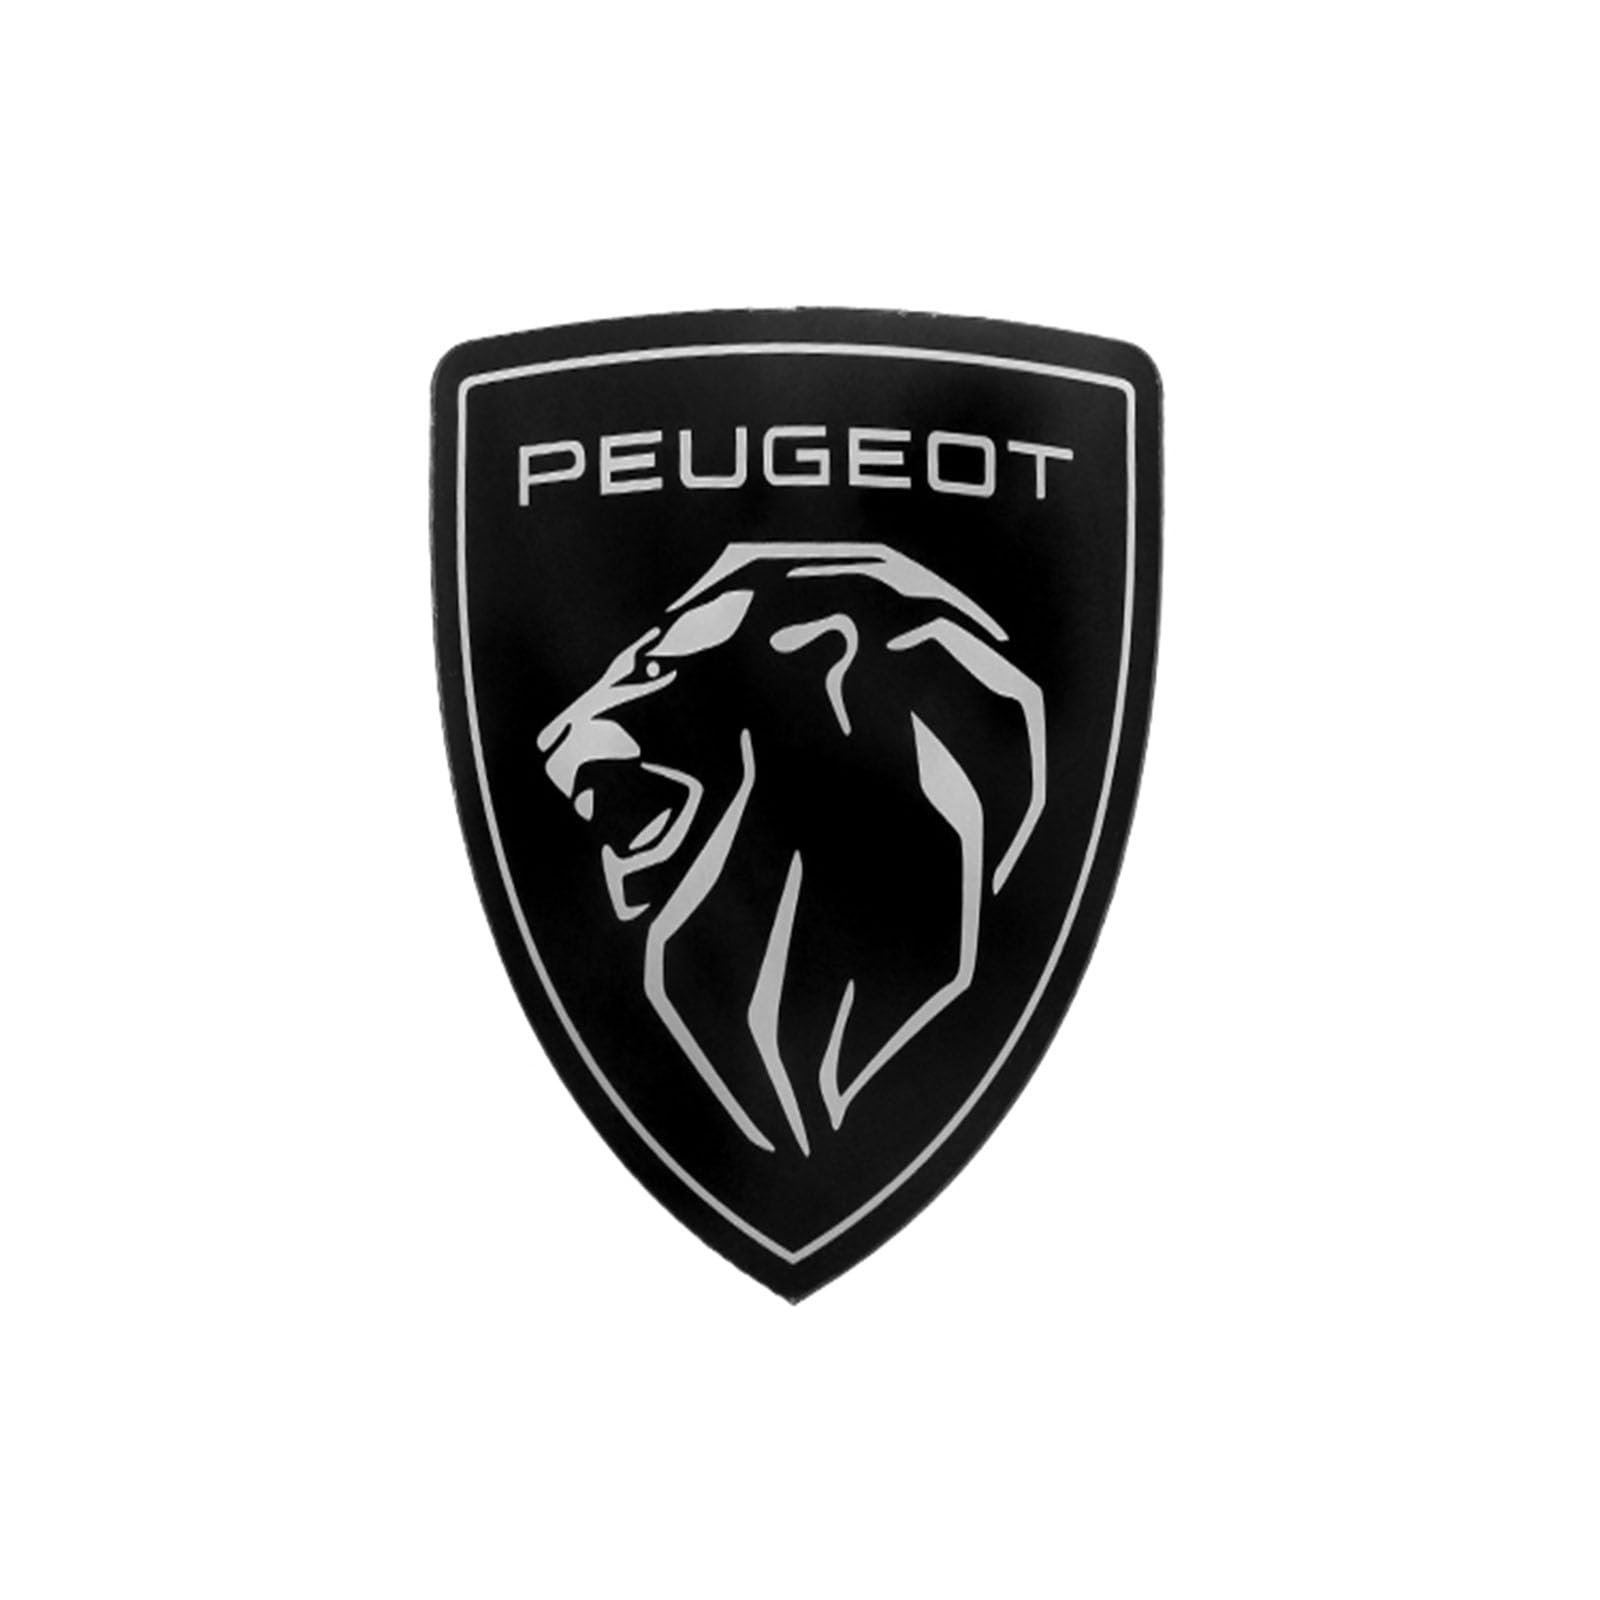 Abzeichen Logo für Peugeot 508L 4008 5008 308 2008 408, Buchstaben Wort Emblem-Aufkleber,Autoaufkleber Sticker Emblem,Auto Emblem Abziehbilder Styling Dekoratives Emblem,Big von DURAGS